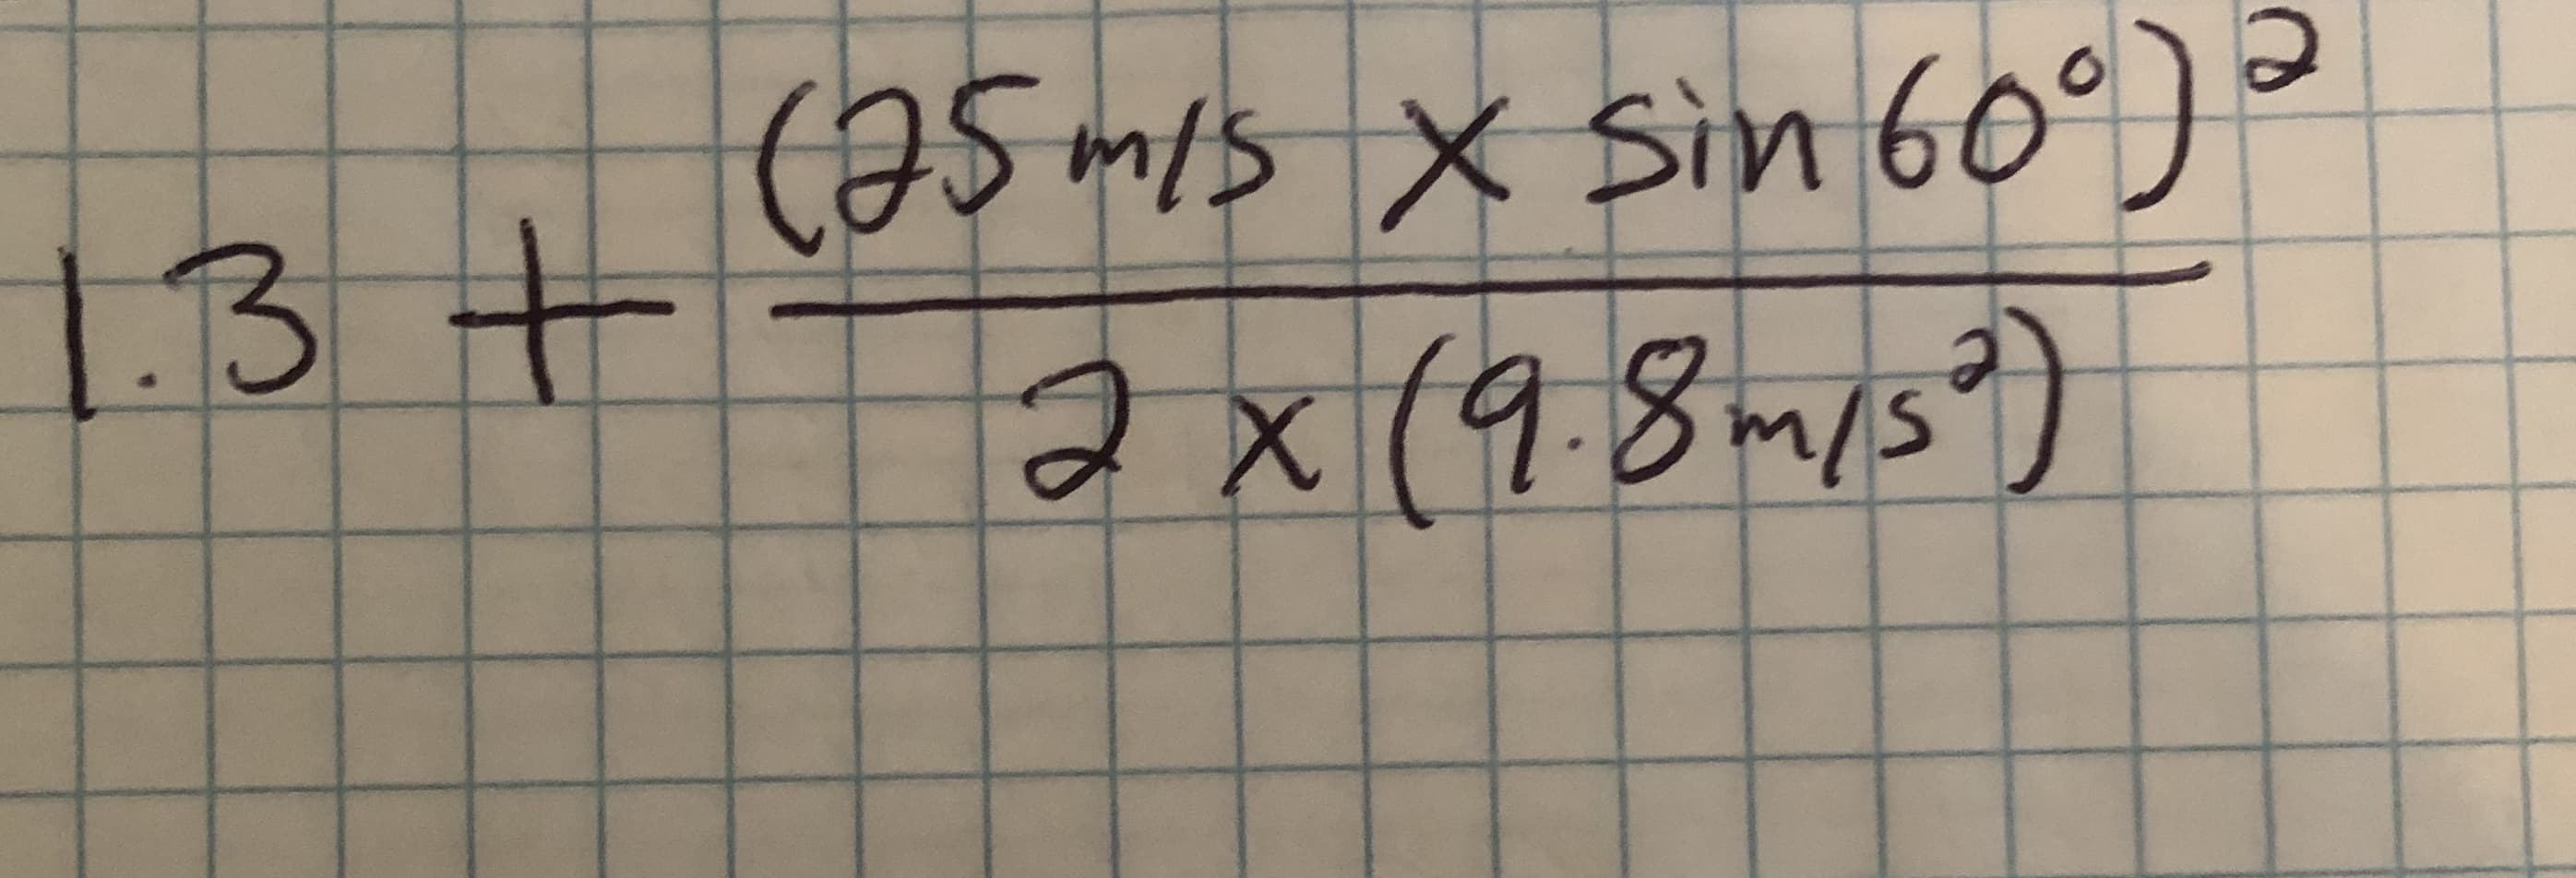 (25mis x Sin 60°)
1.3 +
ax(98m/s?)
